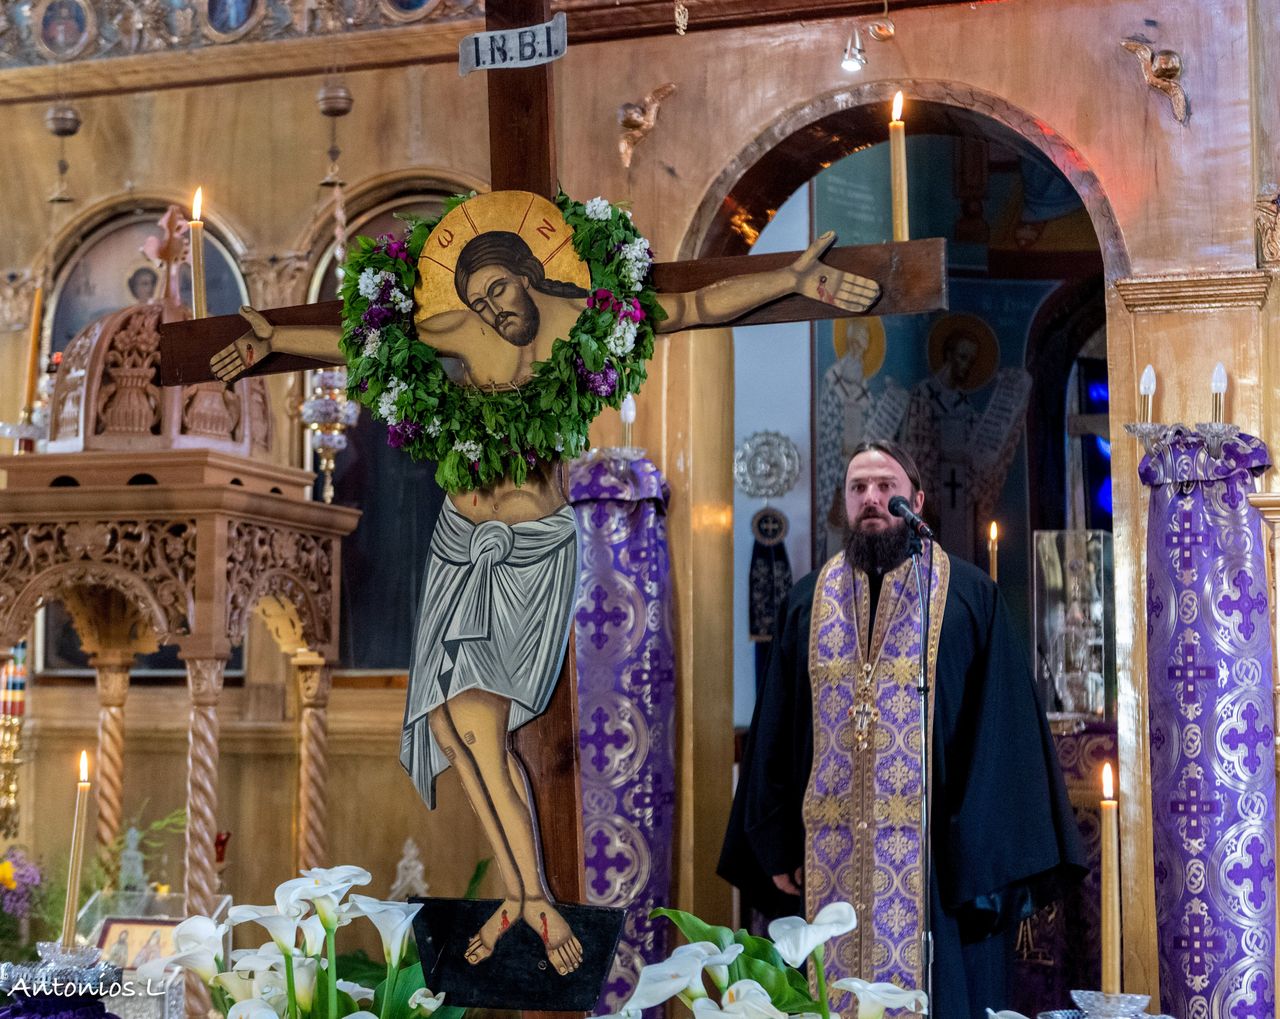 ΑΛΙΒΕΡΙ, ΕΥΒΟΙΑ - Η αποκαθήλωση χωρίς την παρουσία πιστών στην εκκλησία του Αγιου Δημητρίου στο χωριό Αγιος Ιωάννης